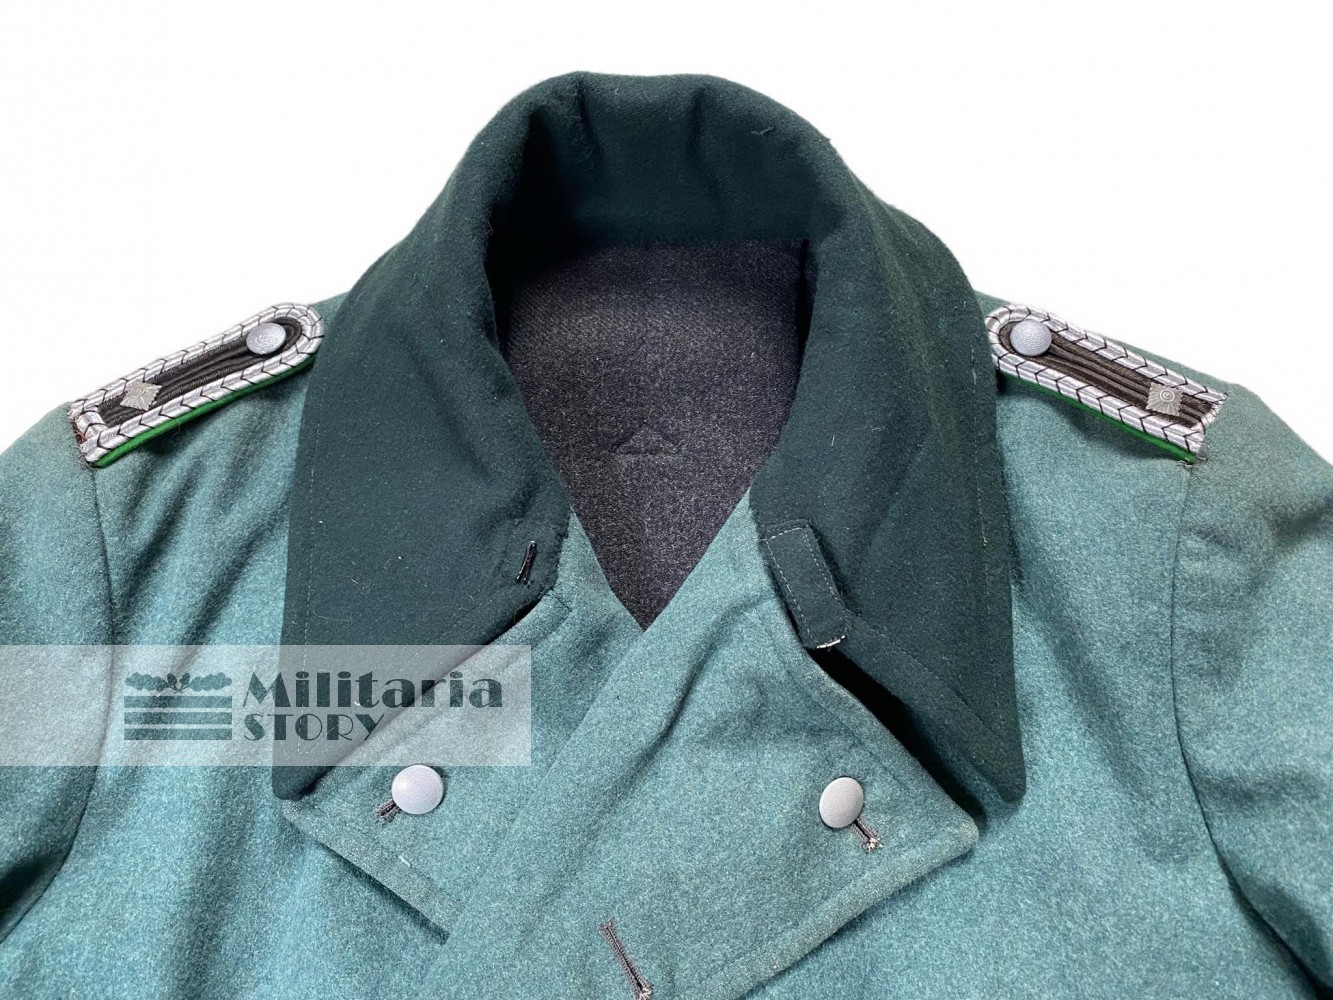 Polizei overcoat - Polizei overcoat: German Uniforms